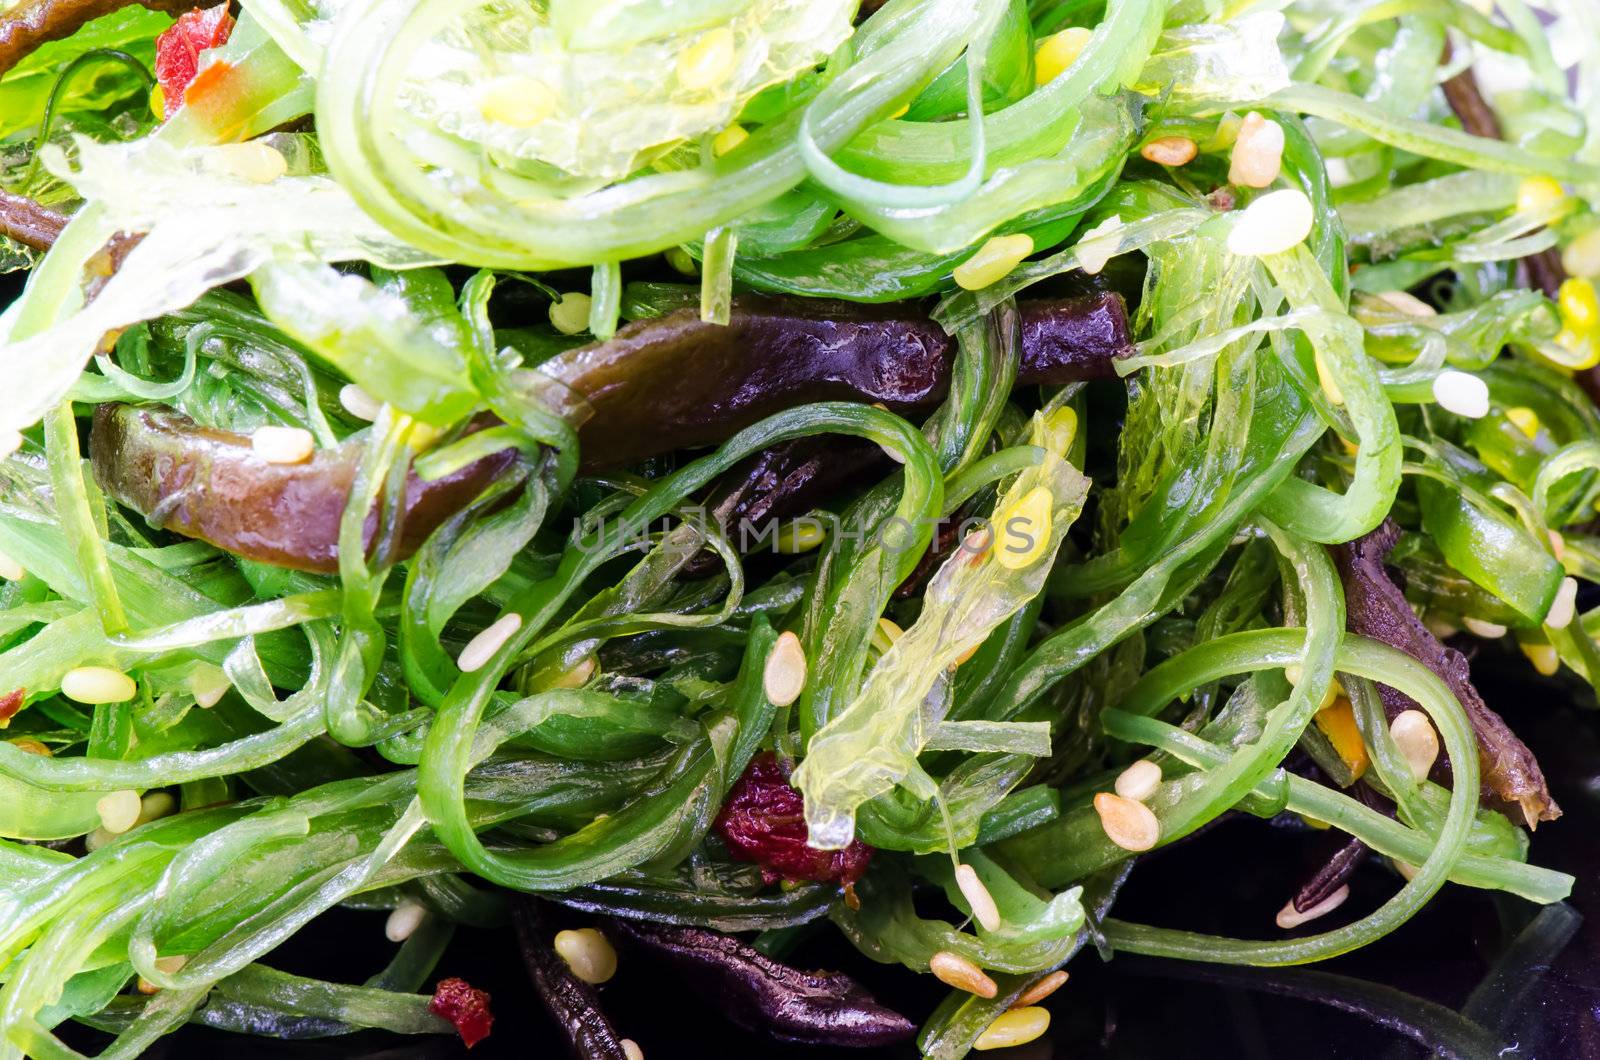 Chuka Seaweed Salad with sesame seeds by Nanisimova